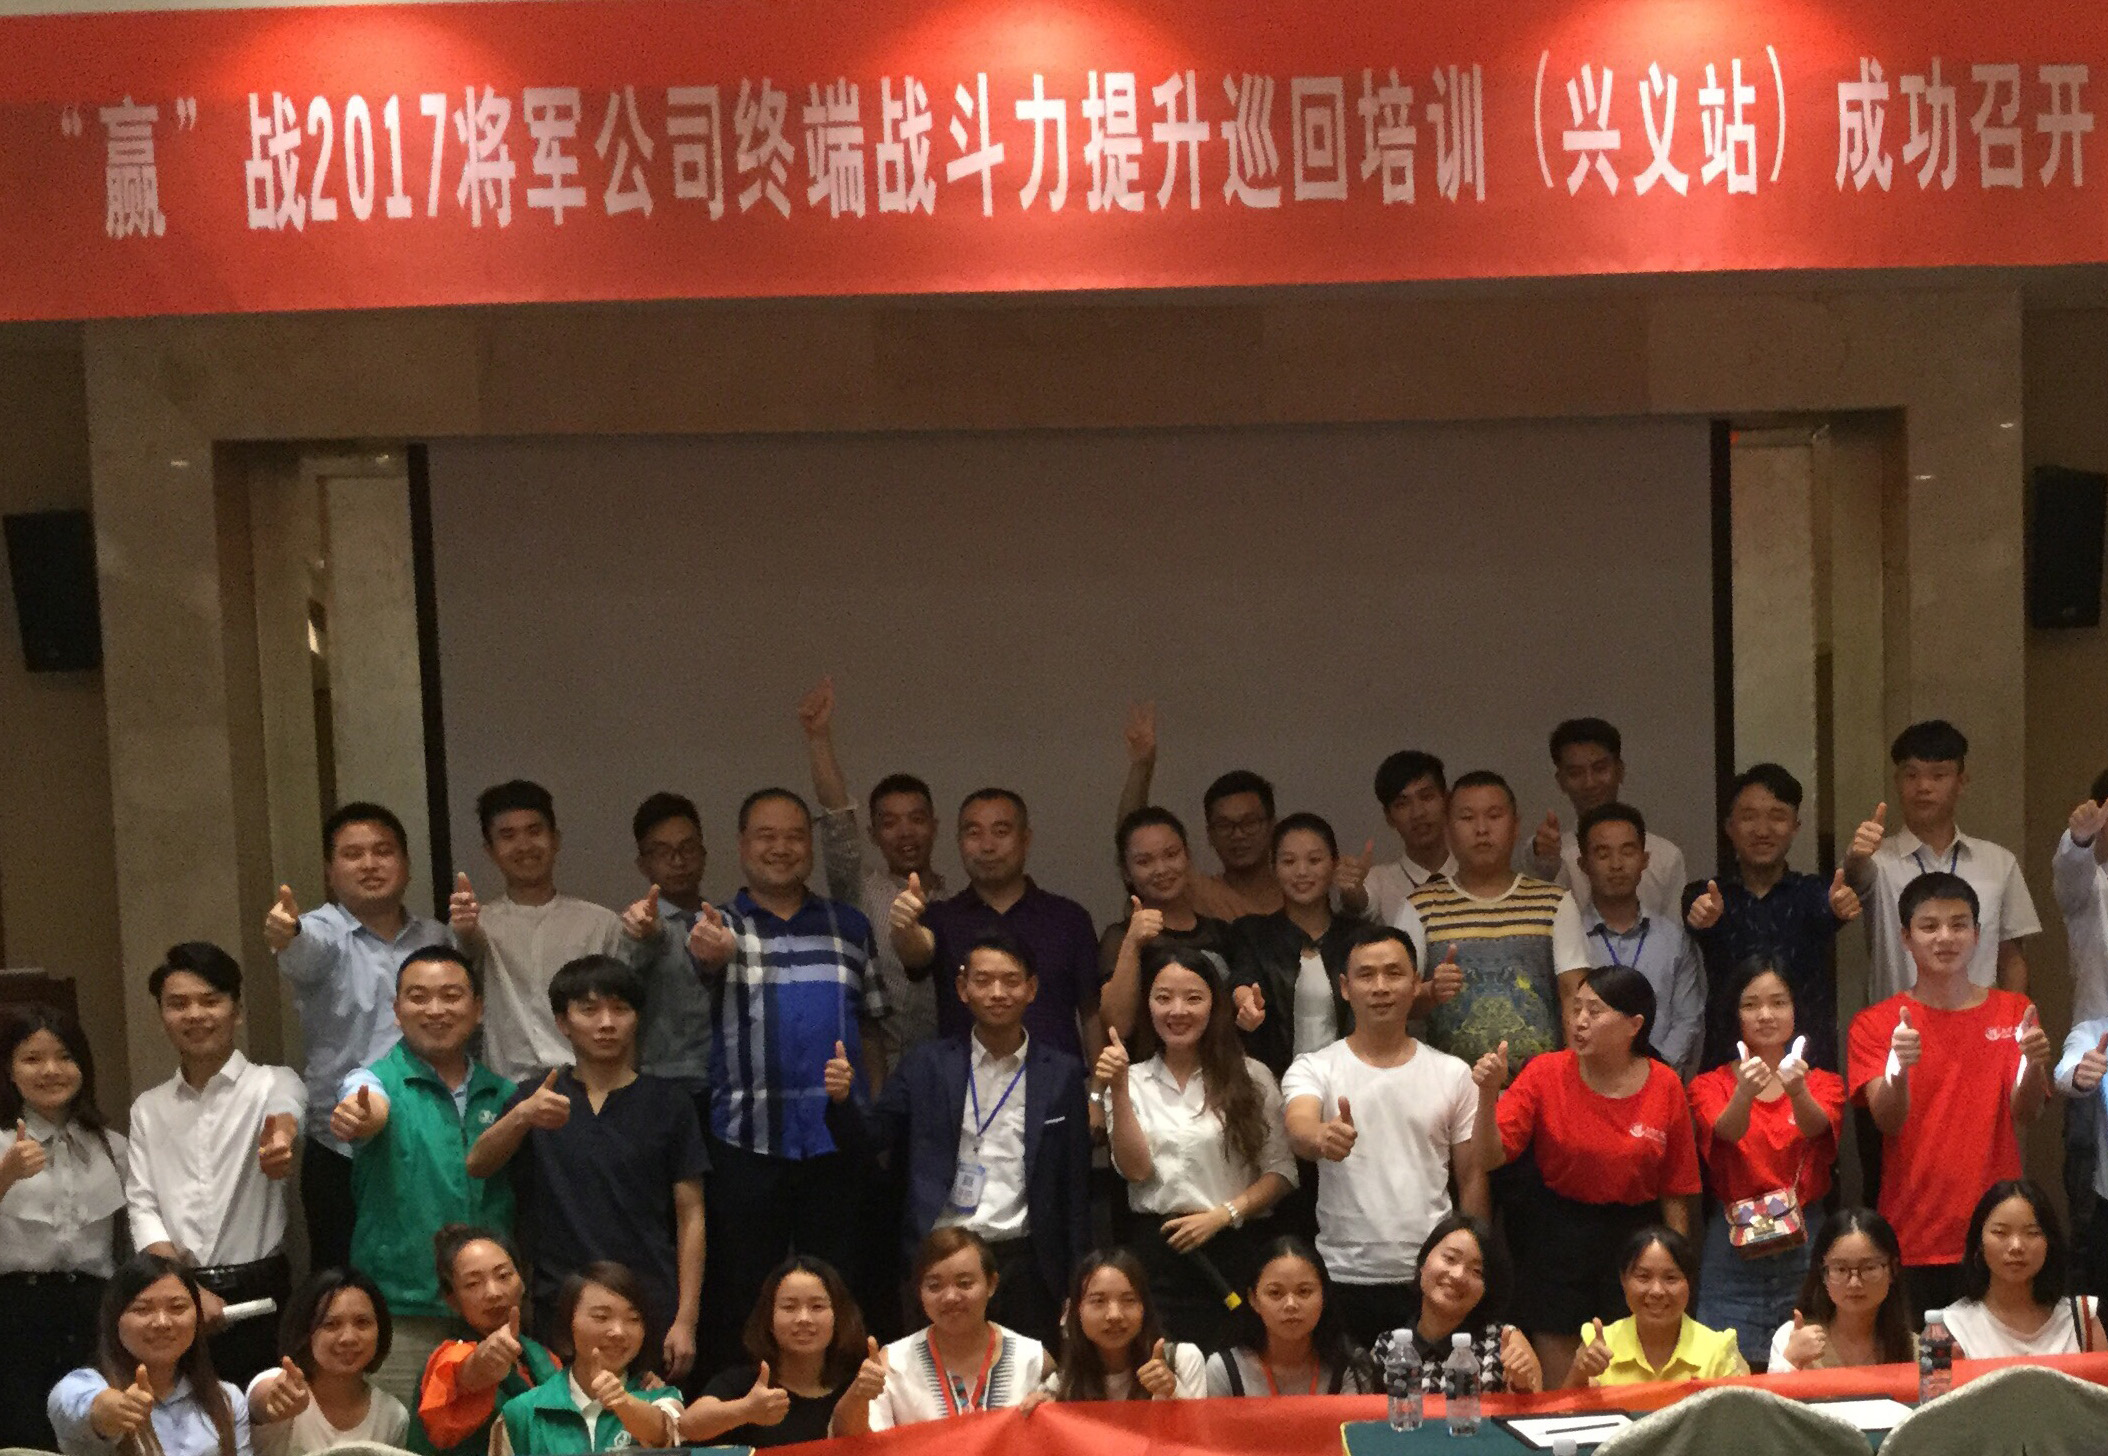 锻造学习力 提高战斗力——大米乐m6
陶瓷“赢”战2017巡回培训（兴义站）圆满成功
